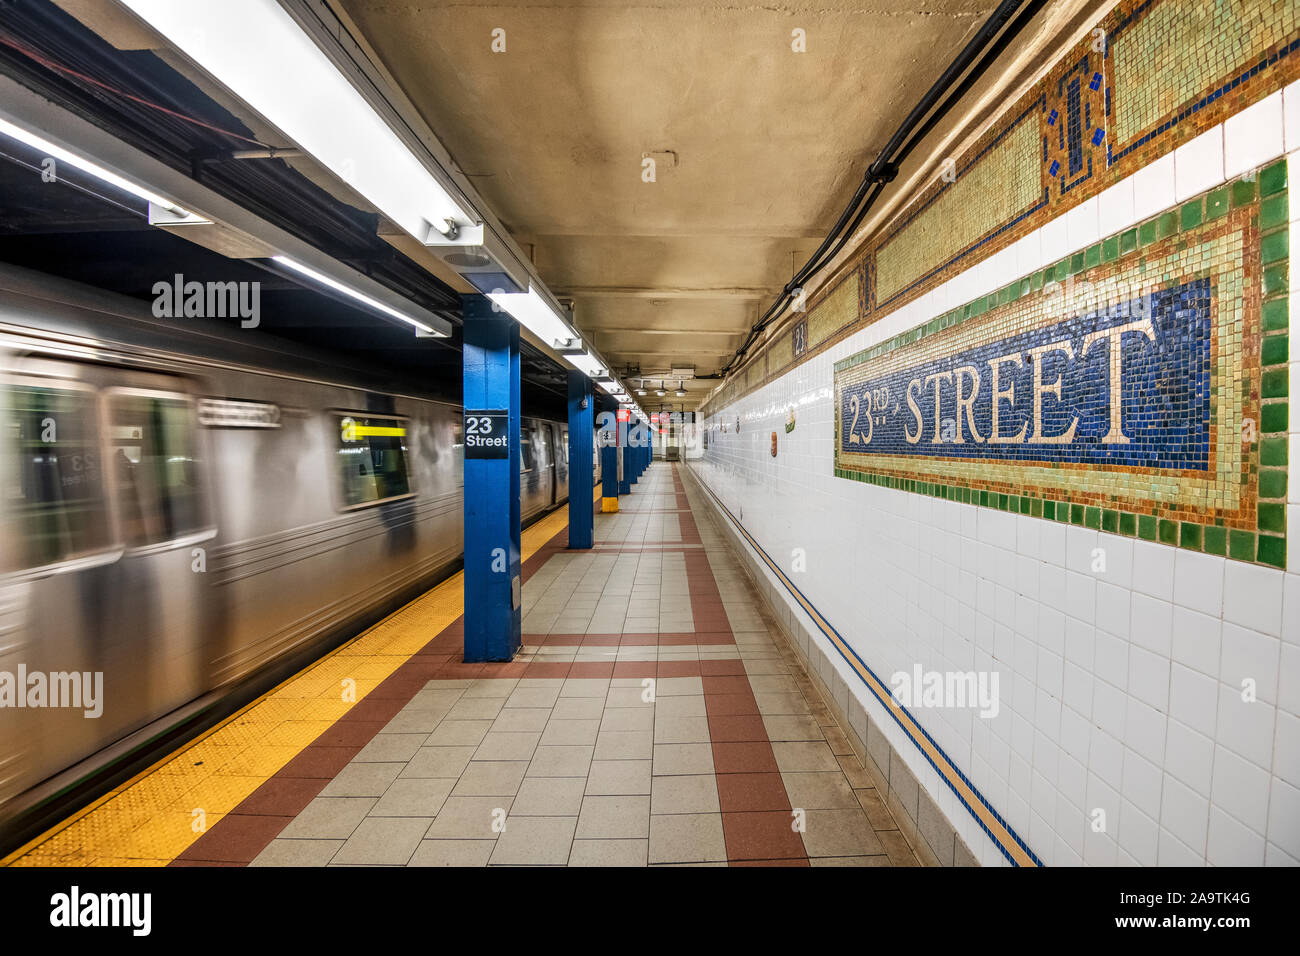 Subway station, Manhattan, New York, USA Stock Photo